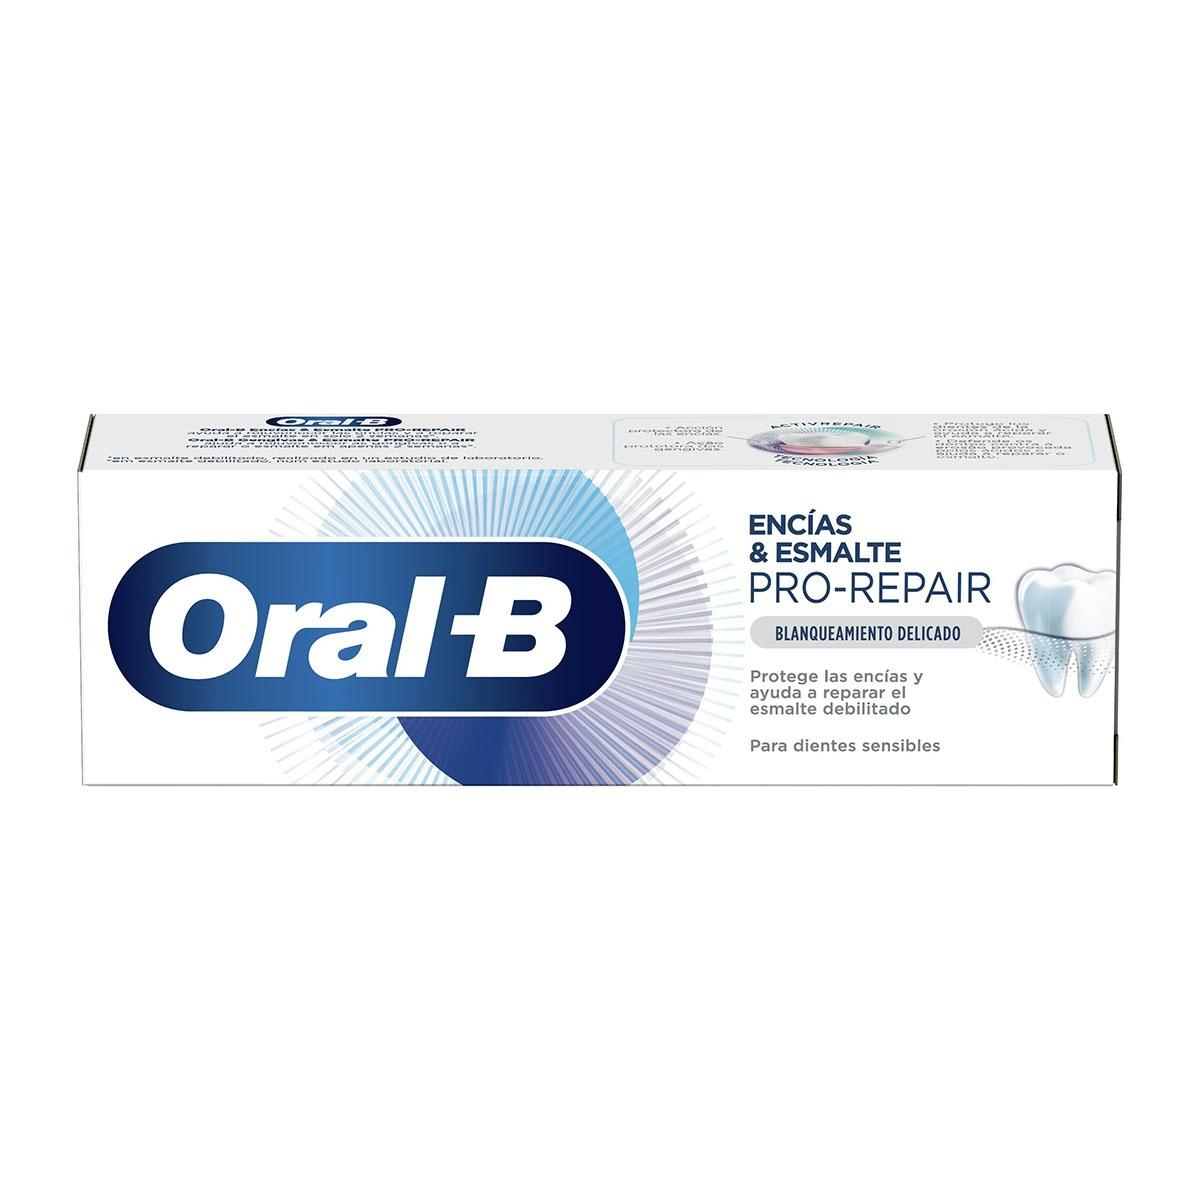 Esmalte Pro-Repair encías Blanqueante ORAL B 75 ml